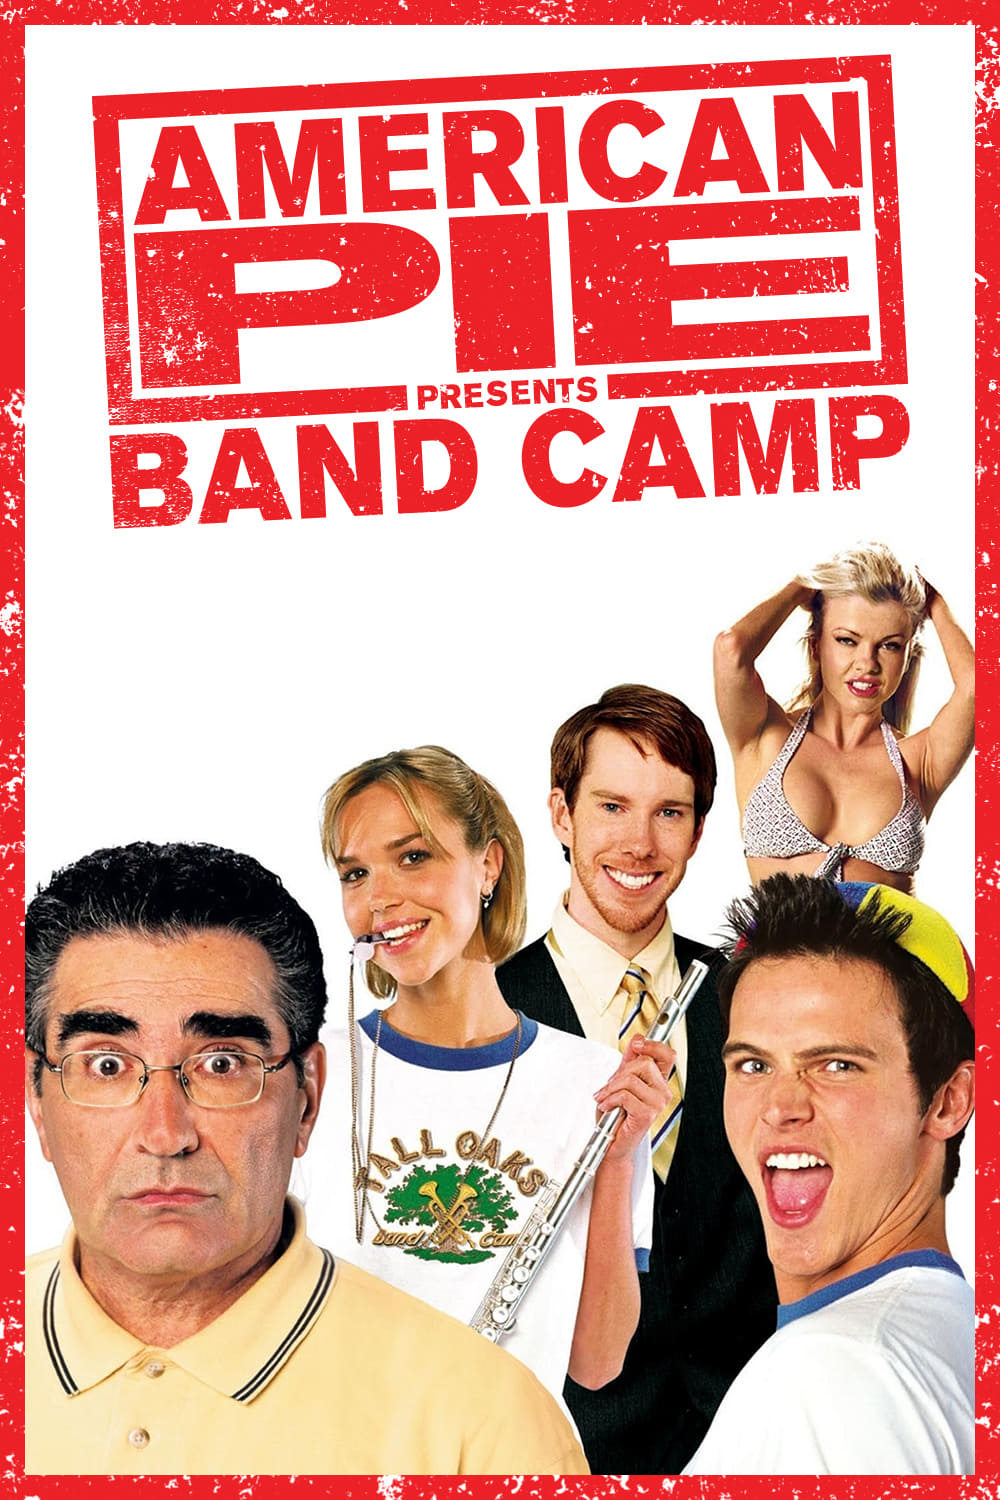 ดูหนังออนไลน์ฟรี หนังใหม่ล่าสุด AMERICAN PIE 4 PRESENTS BAND CAMP (2005)